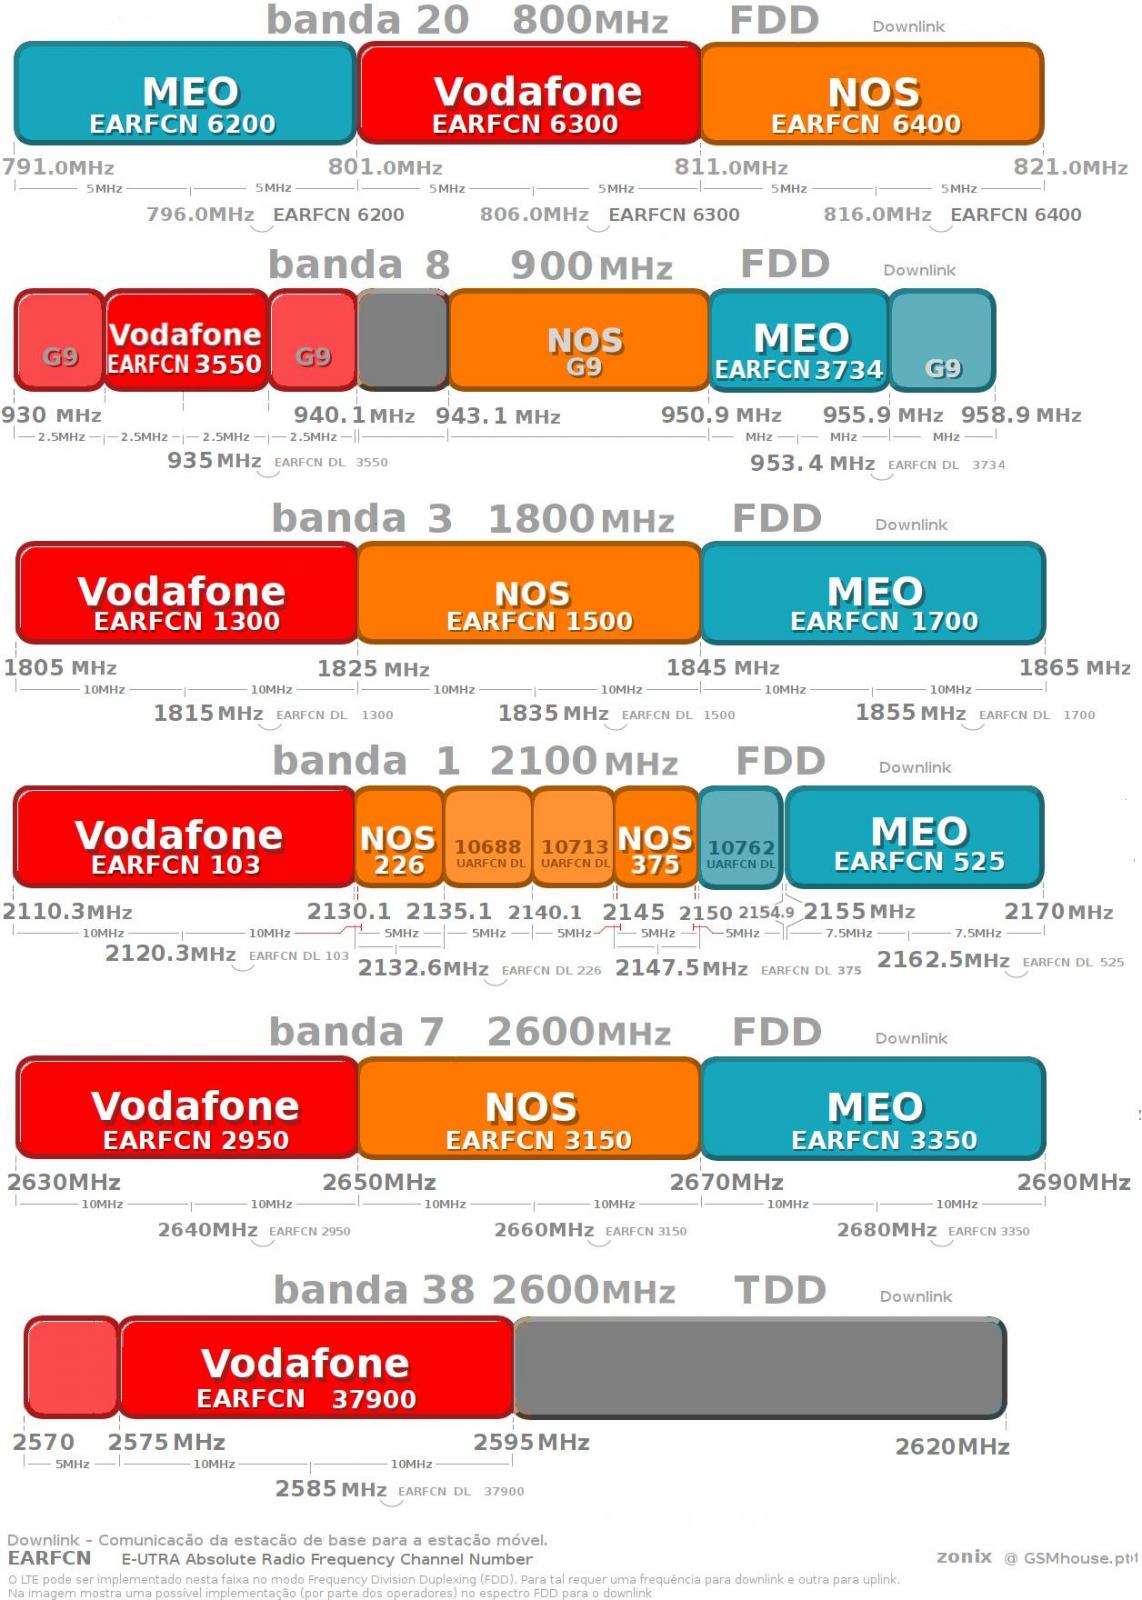 Vodafone mobile signal